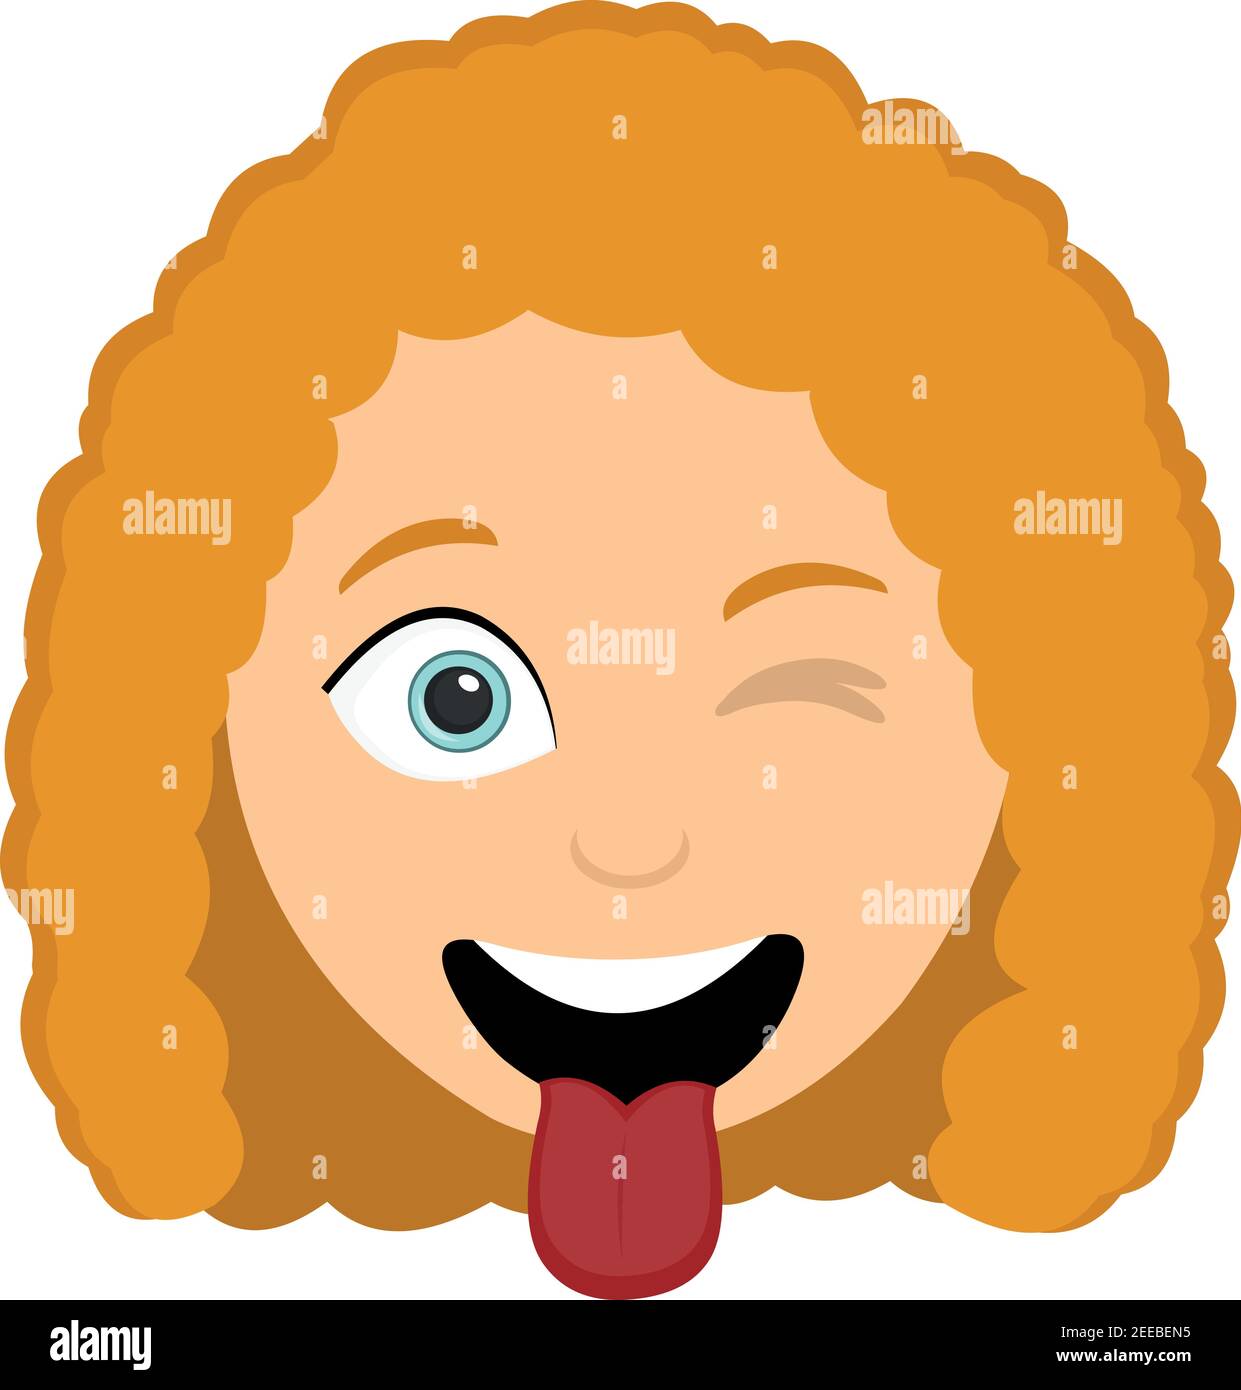 Vecteur émoticône illustration de la tête d'une femme avec une expression drôle, avec sa langue dehors et avec un clin d'œil dans l'un de ses yeux Illustration de Vecteur